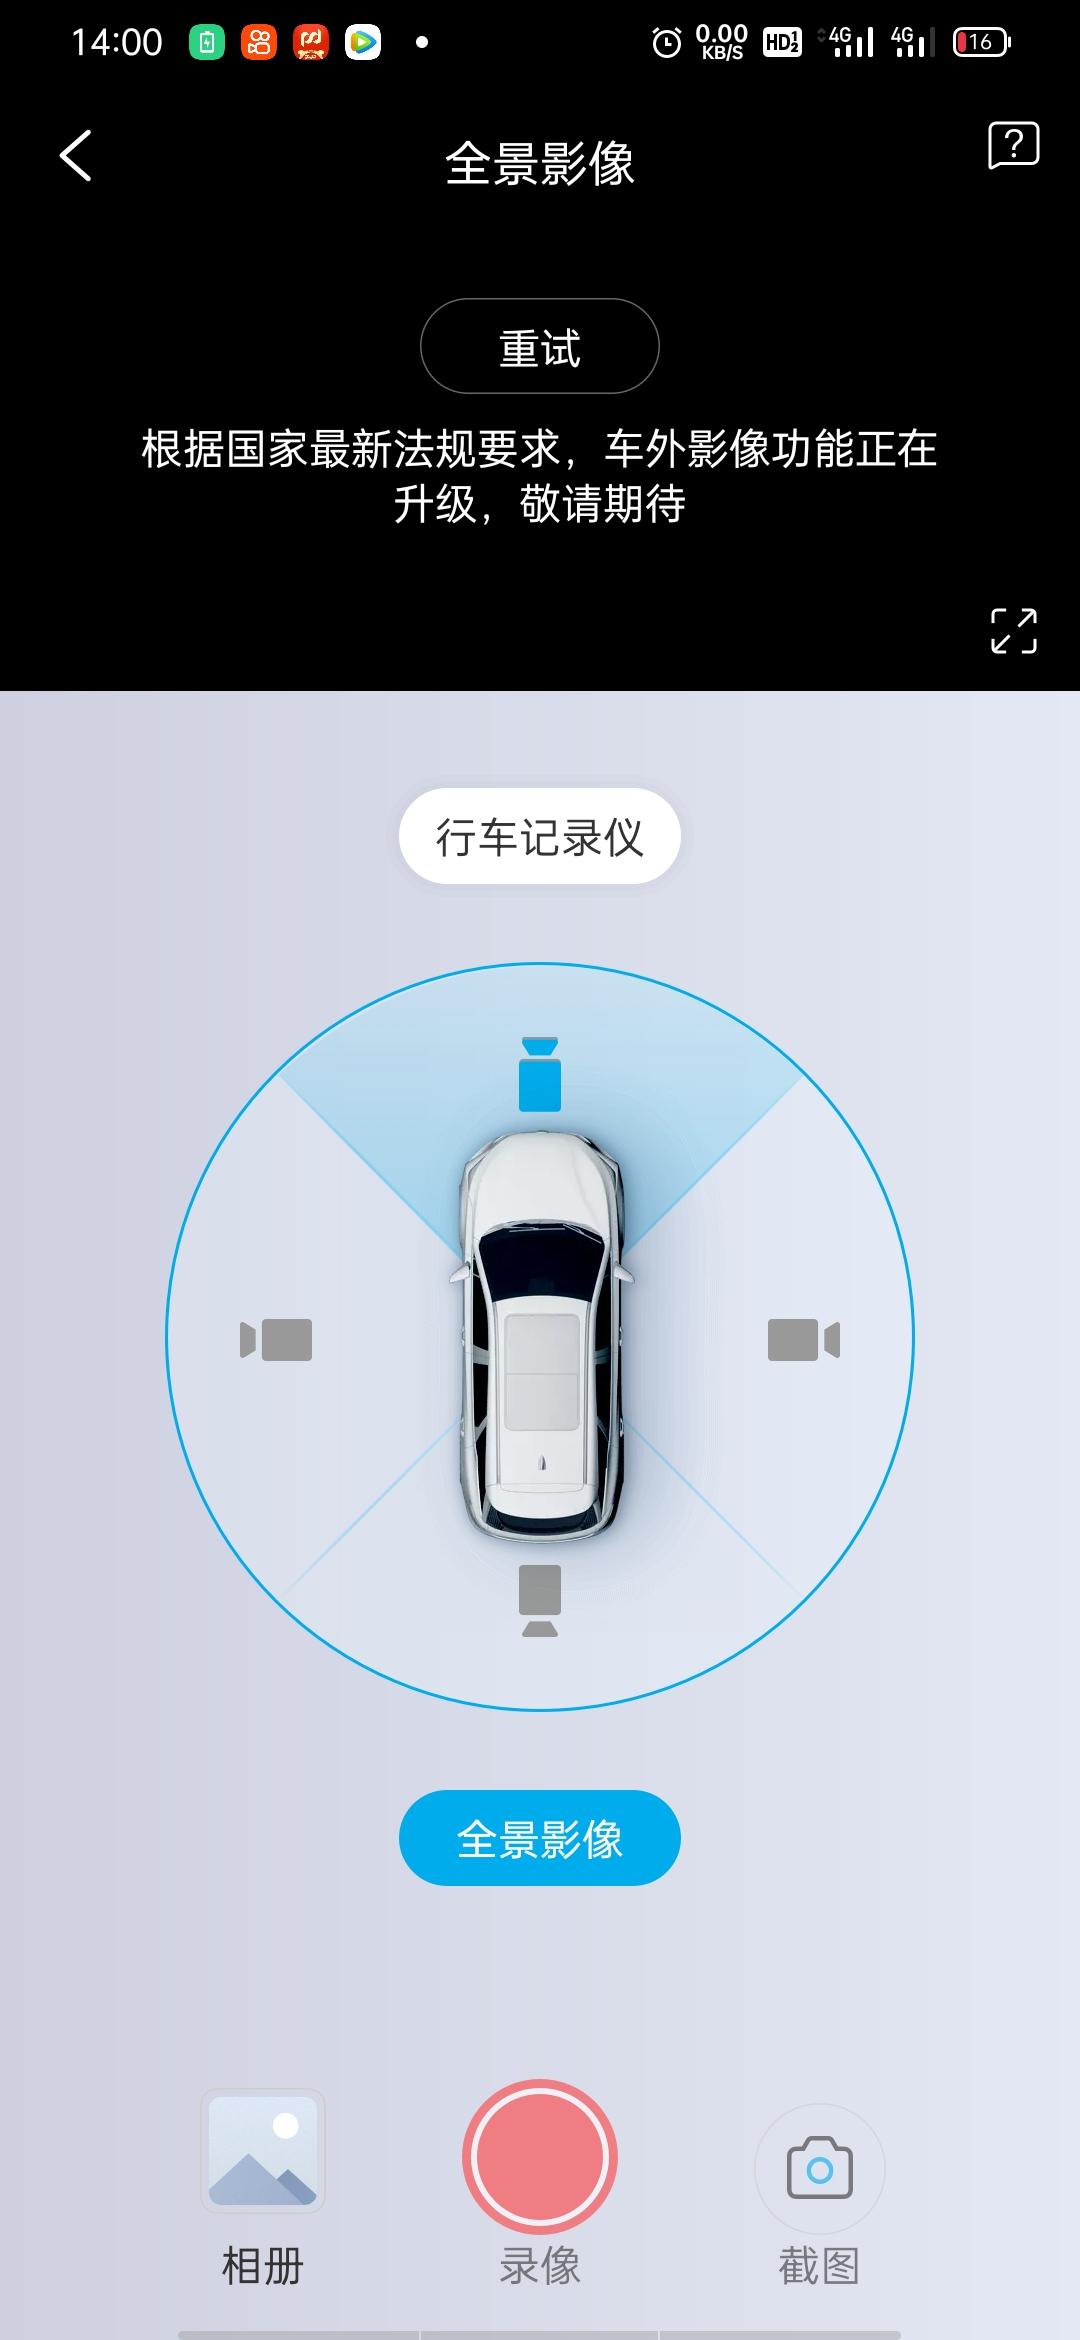 比亚迪元Pro 大家好，坐标广东江门，元pro千里眼功能提示不用了，有车友一样的吗？